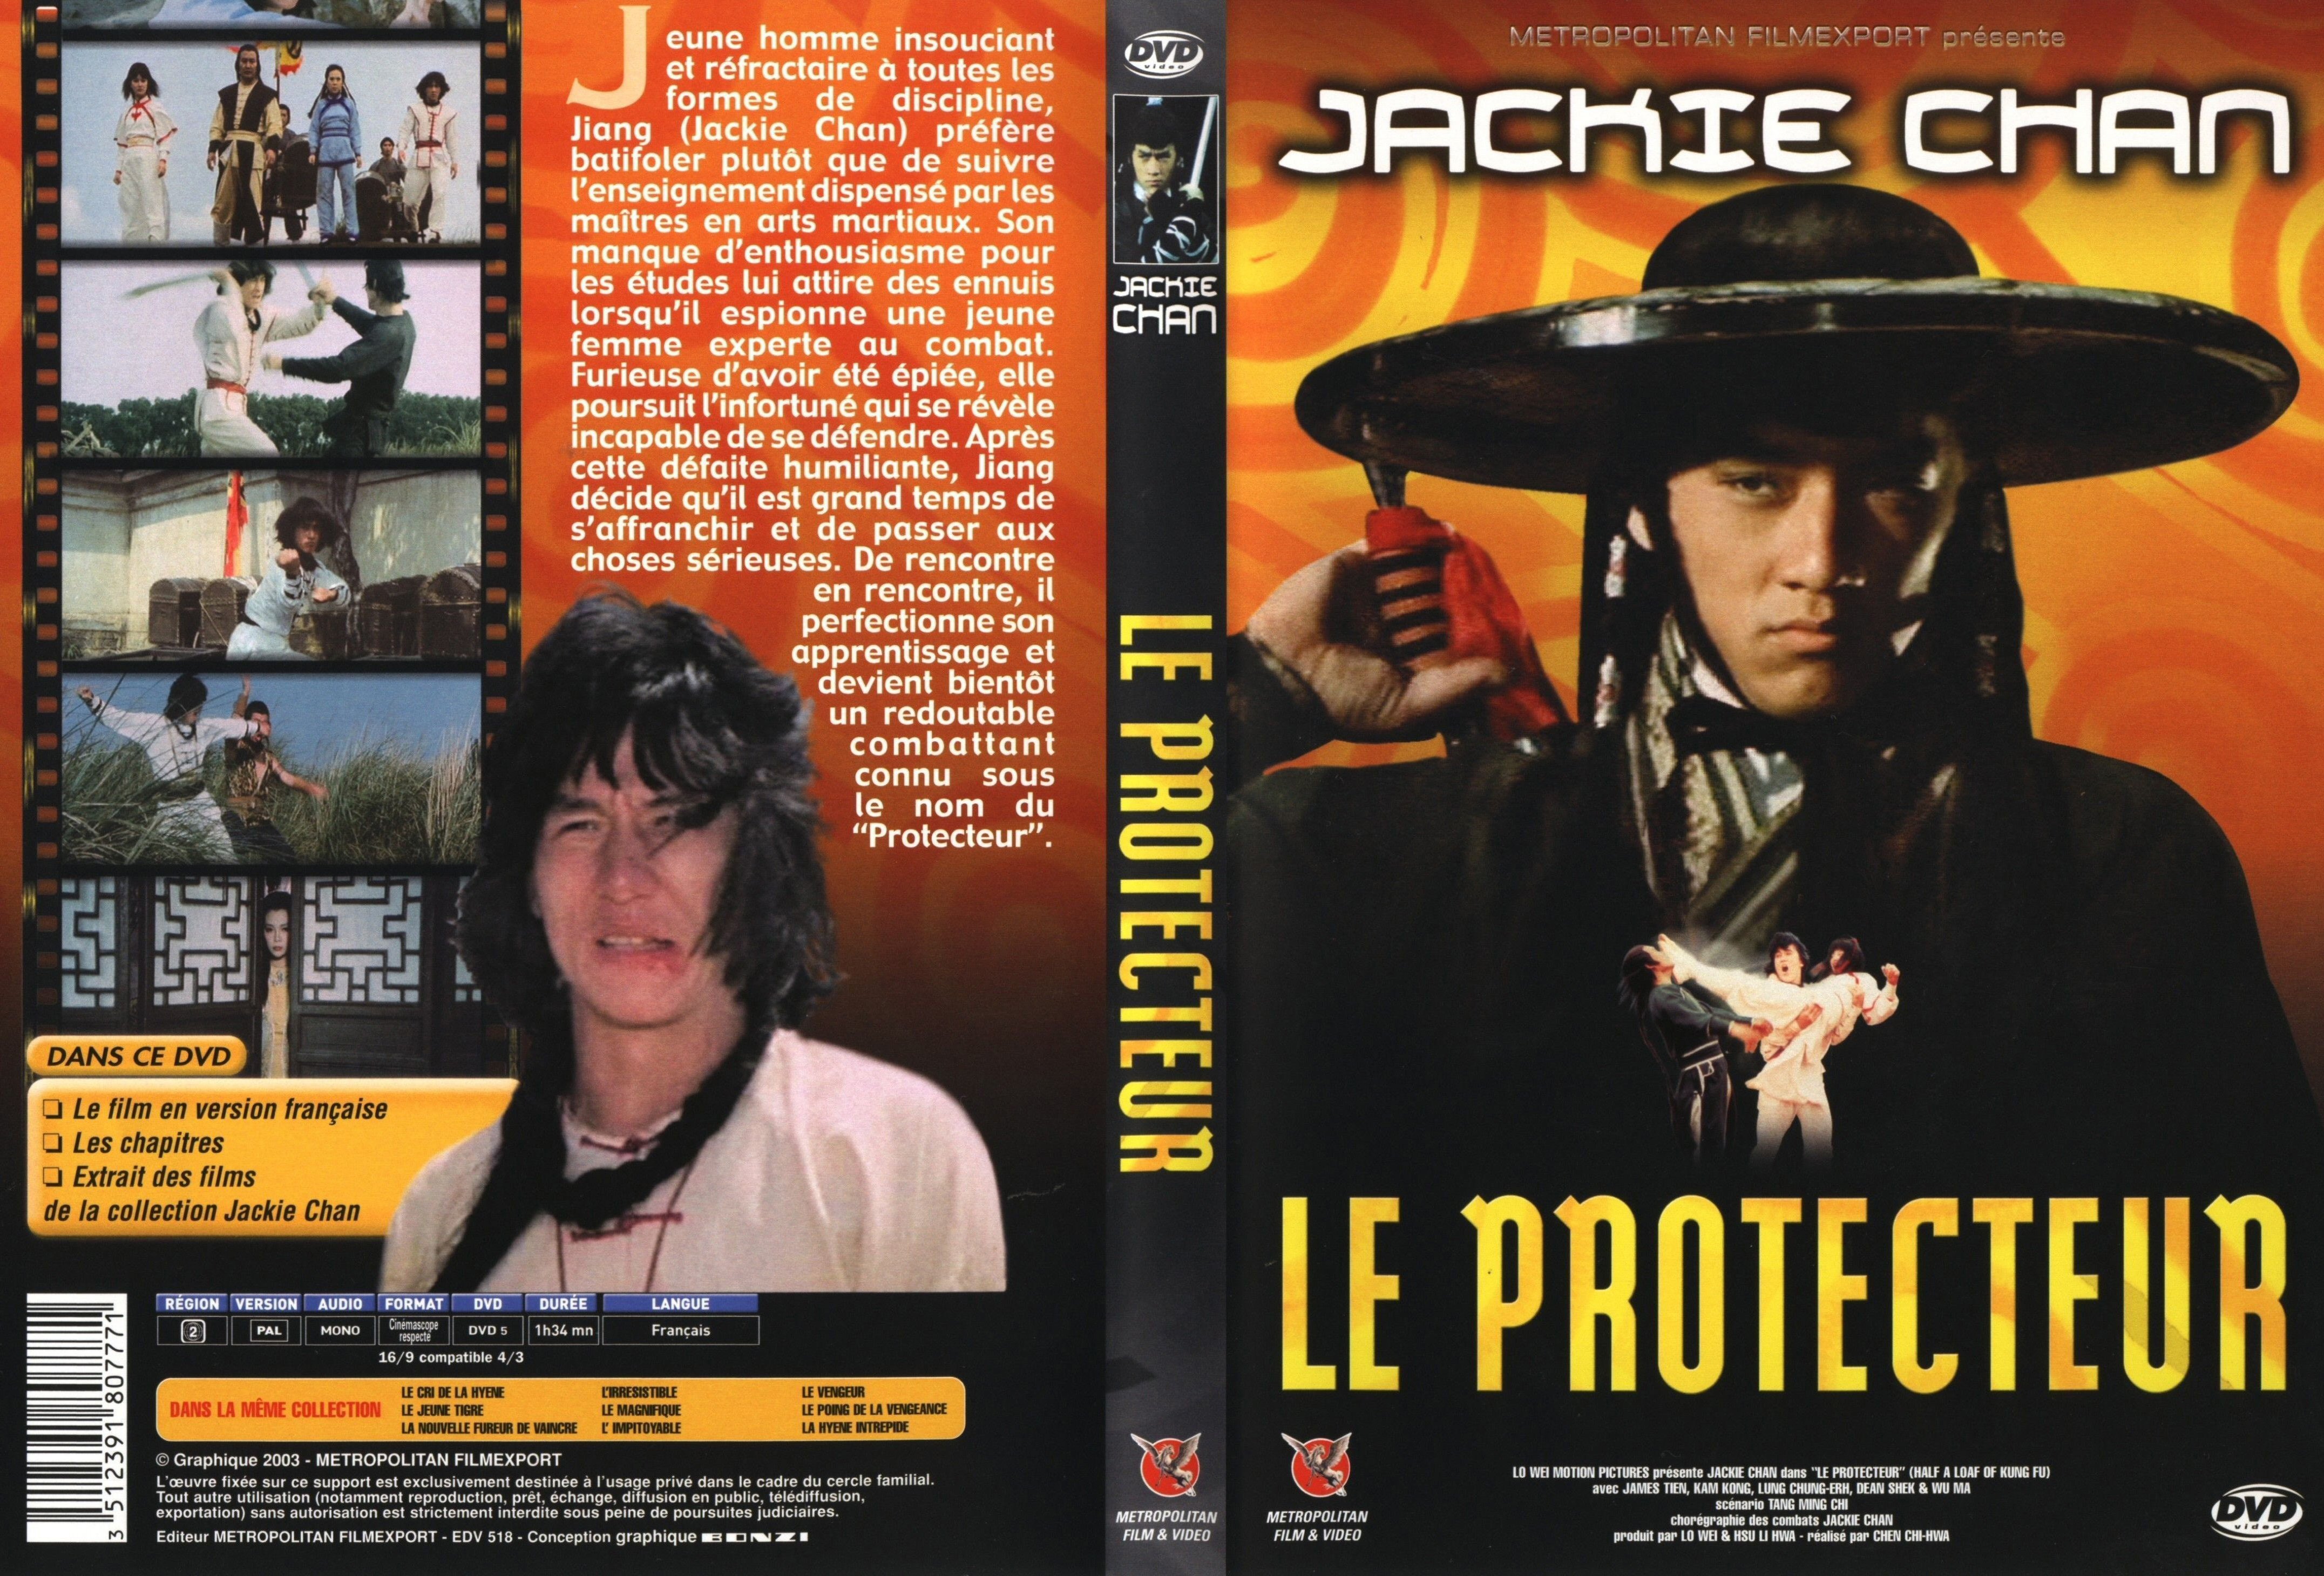 Jaquette DVD Le protecteur v2